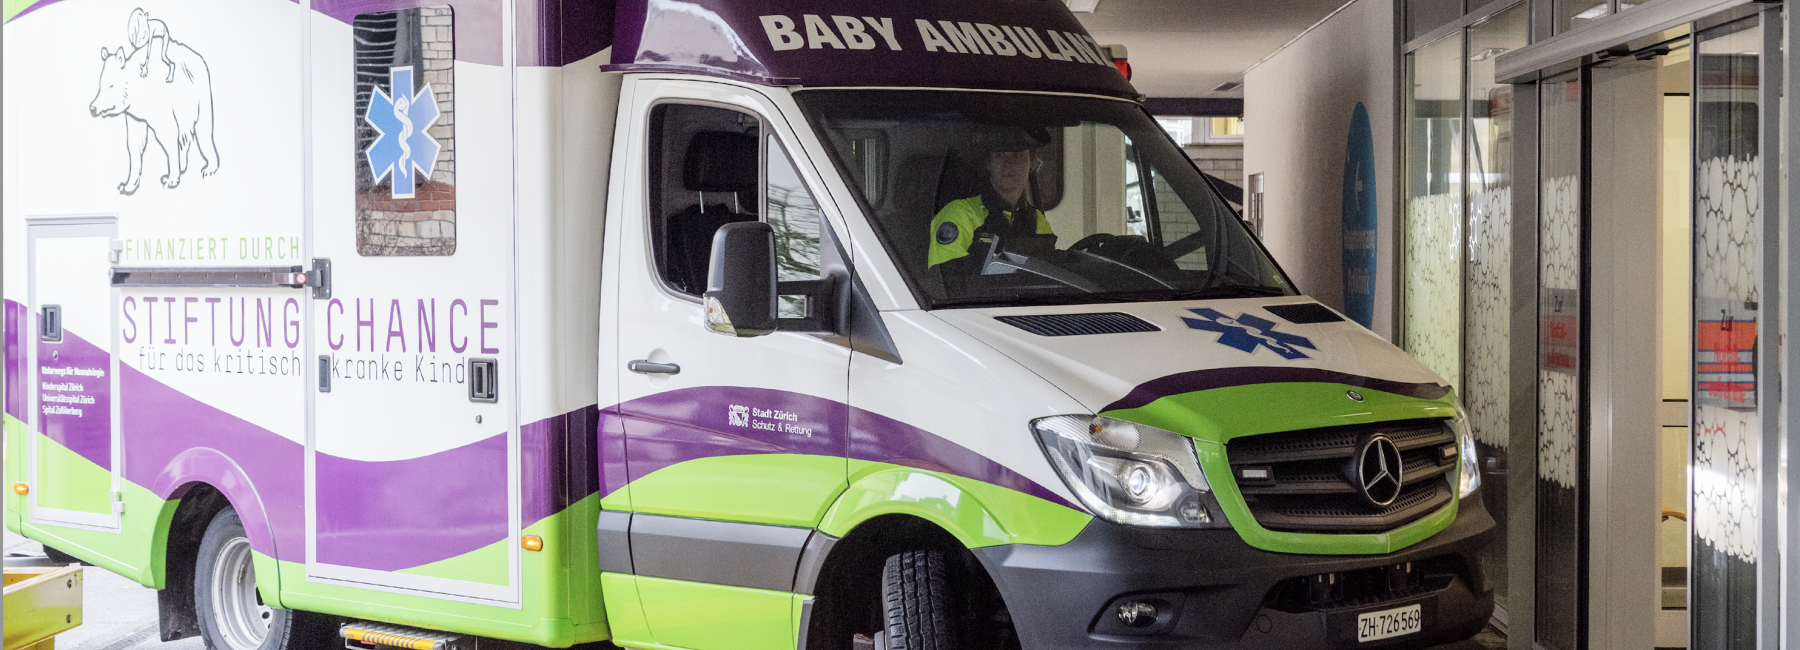 Europas modernste Baby Ambulanz